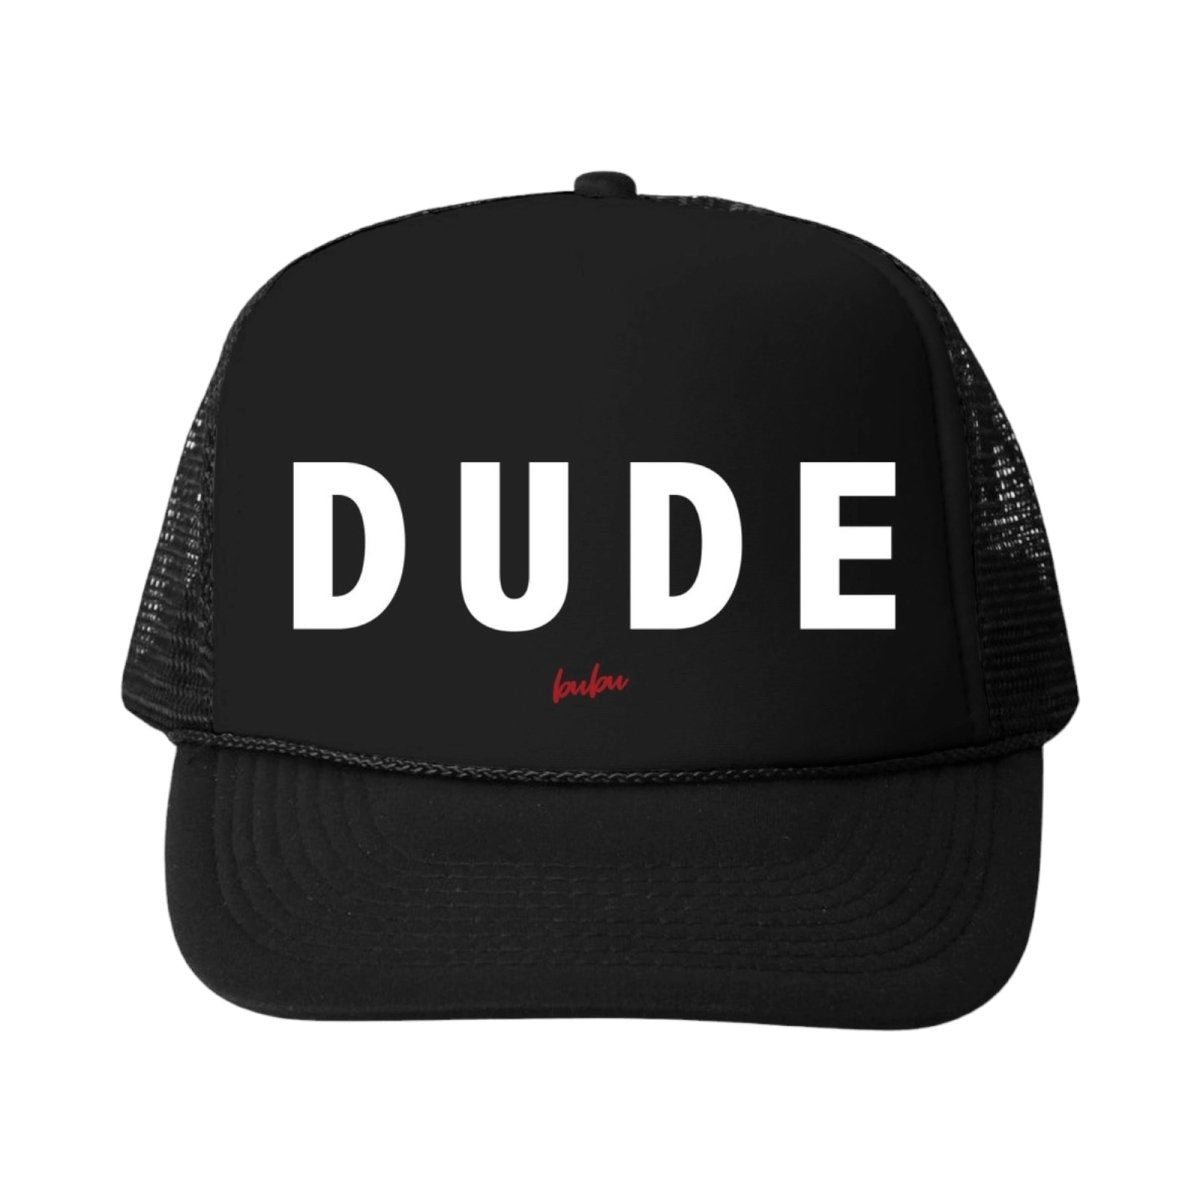 DUDE TRUCKER HATS - HATS